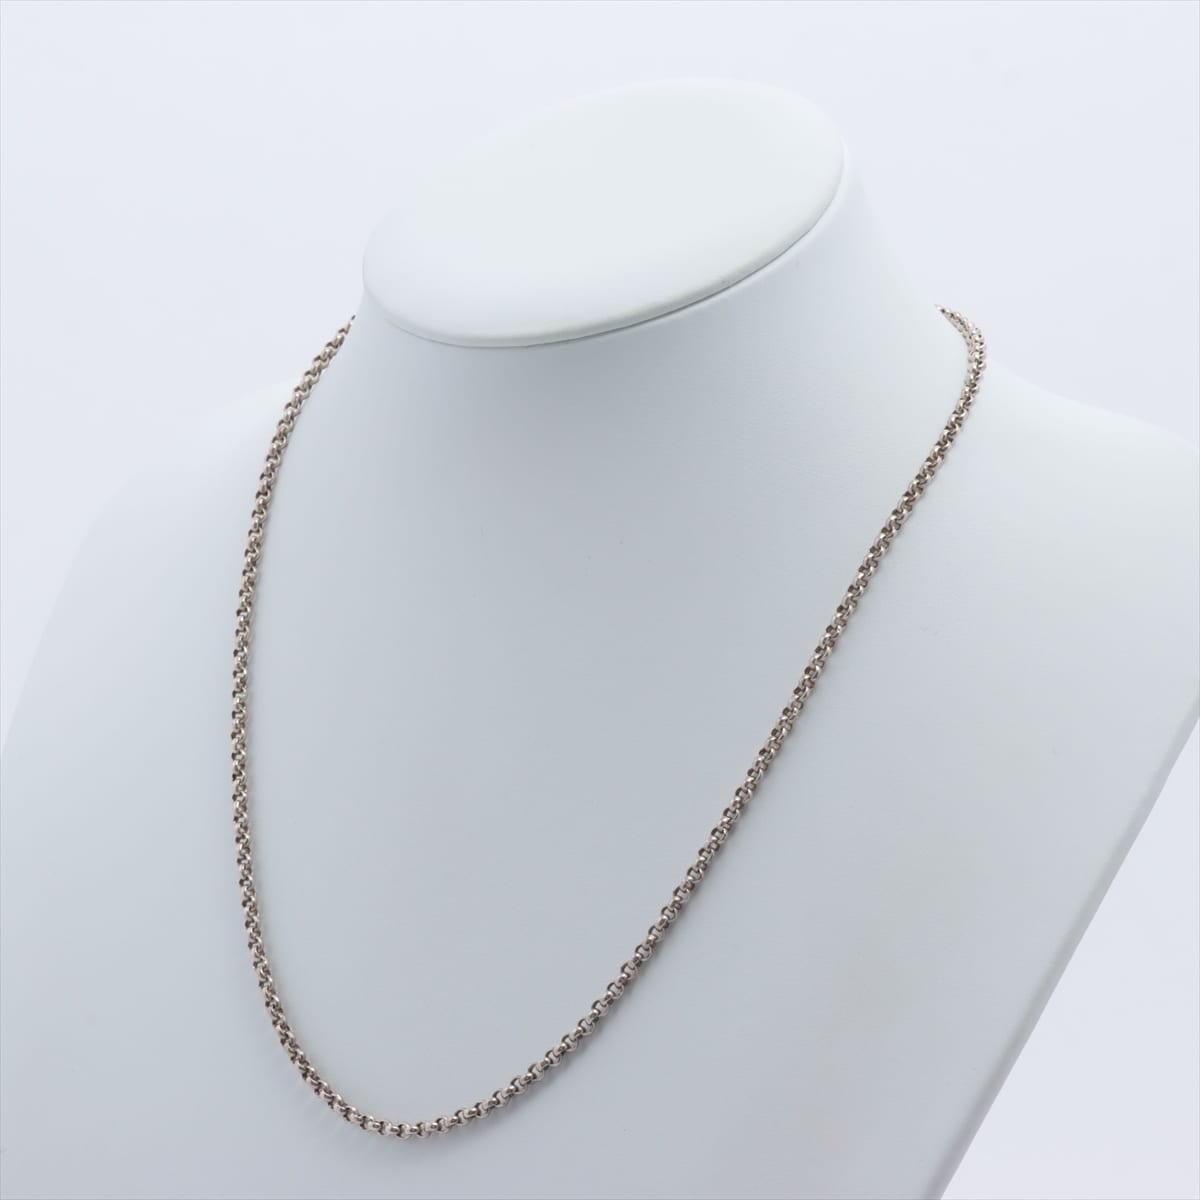 Hermès Chain Necklace 925 13.5g